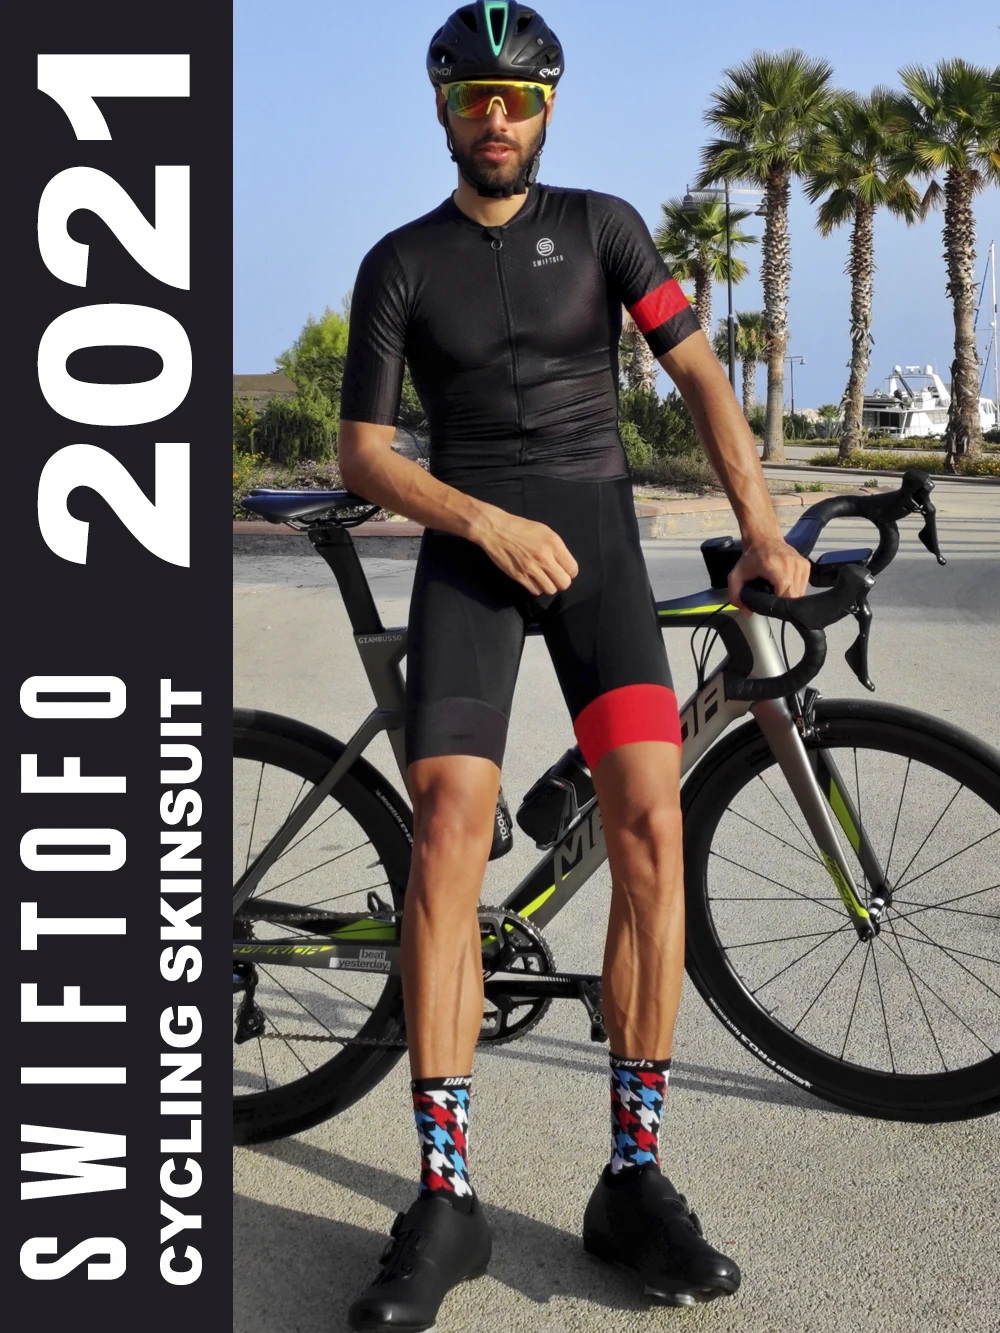 conjunto traje de triatlón mono Skinsuit para Ciclismo para hombre 